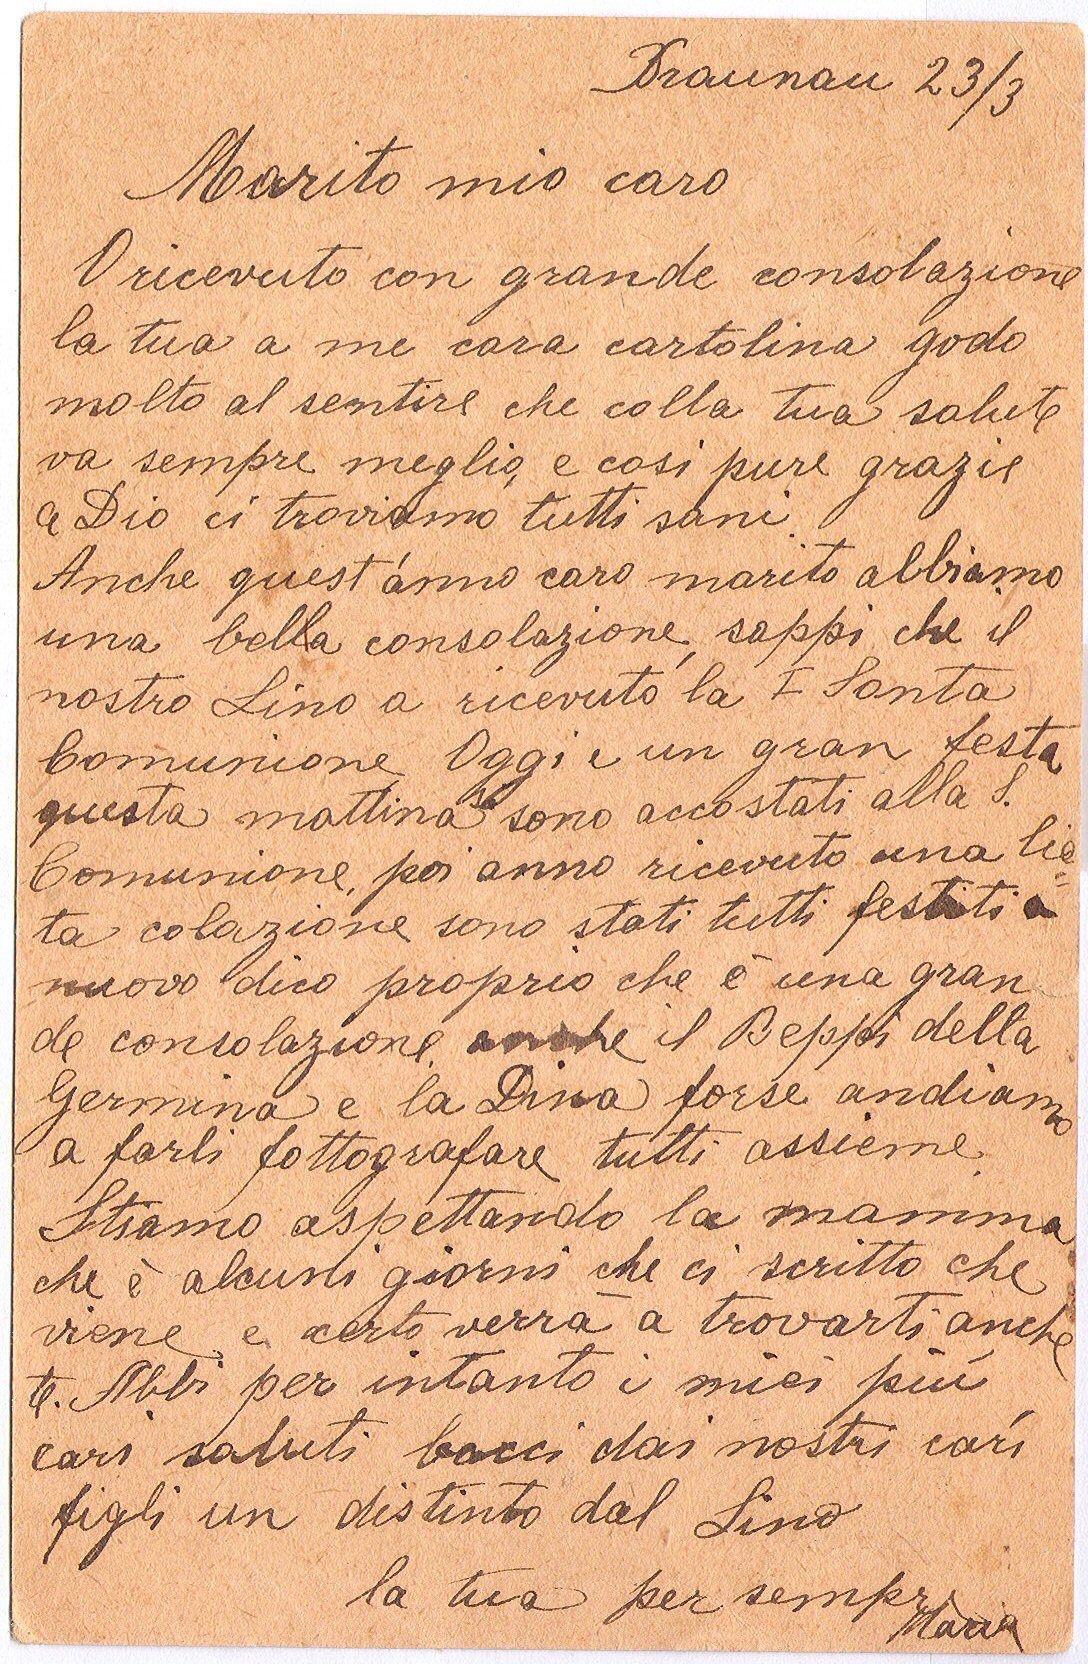 23 marzo 1917 - lettera dalla moglie maria profuga a braunau